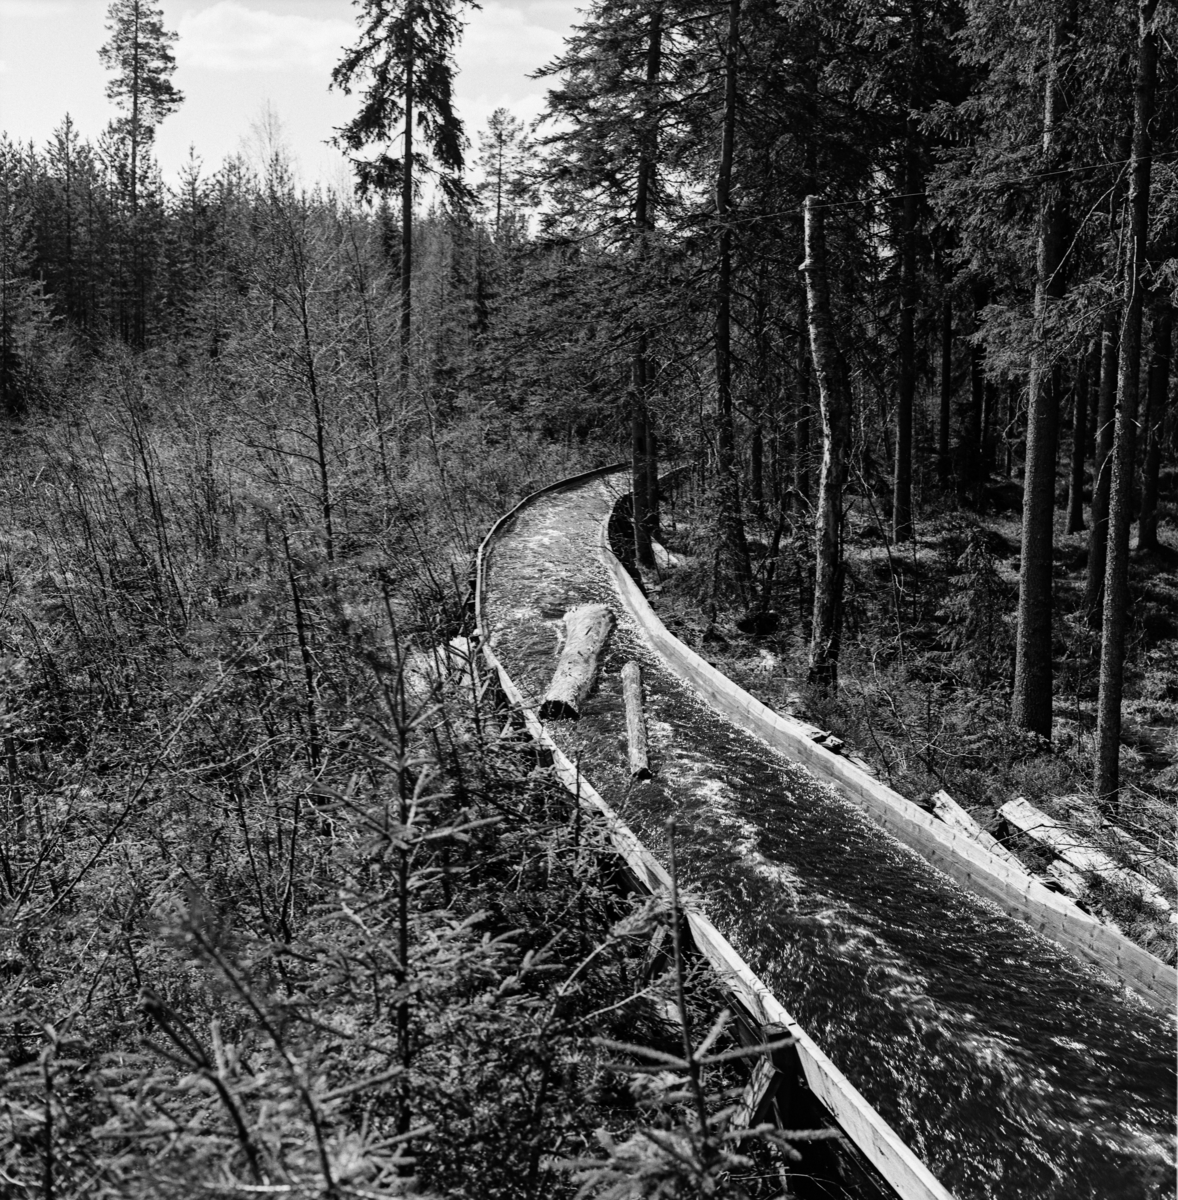 Tømmerrenna i den nedre delen av Fallåa i Romedal allmenning, fotografert i mai 1969.  Bildet later til å være tatt i medstrøms retning i et lende der traséen er relativt slak, og hvor renna var lagt i en kurve.  Vi ser hvordan tømmerstokkene flyter nedover på en forholdsvis stilleflytende vannstrøm. Rennetraséen går med tett, høy barskog på den ene sida (til høyre i bildet, nordvest i terrenget), og med ungskog på den andre.  Fallårenna vr ei såkalt «plankerenne» eller «våtrenne».  Renneløpet er lagd av planker, antakelig av to-tre tommers tjukkelse, muligens med et slitelag av en eller halvannen toms bord i botnen innvendig.  Slike renner fikk gjerne et trapesformet tverrsnitt med botnbredde på 40-60 og en åpning på 75-100 centimeter mellom overkantene, noe som later til å være tilfellet her også, sjøl om eksakte mål ikke kan fastslås ut fra fotografiet. Behovet for ei tømmerrenne i Fallåa skyldtes at dette lille fløtingsvassdraget passerte et bratt fall cirka en kilometer før det nådde utløpet i Malungstjernet.  Her hadde tømmeret lett for å splintres eller å sette seg fast.  Derfor bygde trelastfirmaet Westye Egeberg & Co. ei tømmerrenne på dette stedet i 1890-åra.  Denne første renna var ment som ei våtrenne, som den på fotografiet, men den fungerte ikke helt etter intensjonene.  Ettersom inntakspunktet for renna var plassert litt nede i den bratte skrenten, skal tømmeret ha blitt kastet inn i renna i så stor hastighet at tømmerstokkene så å si seilte fra vannet, som kom støtvis etter.  Dette innebar mye slitasje på rennelegemet, og stadige reparasjonsbehov.  Derfor bestemte man i 1914 at renna skulle forlenges og forhøyes, slik at tømmerinntaket kunne flyttes til en damkonstruksjon – seinere kalt Rennedammen – noe høyere oppe, ovenfor det bratte partiet.  Dermed oppnådde fløterne jevnere vannføring og noe langsommere framdrift for fløtingsvirket.  Der renna krysset den daværende kjerrevegen mellom Vallset og Odalen ble det bygd bru over renna.  Renna fra 1914 var i bruk fram til 1934.  Romedal allmenning, som i mellomtida hadde overtatt Westye Egeberg & Cos eierskap til skogen i dette området, bygde da ei helt ny renne der den forrige hadde stått.  Samtidig ble Renndammen forhøyet og pusset med sement.  Renna fra 1934 var i bruk i 35 år, altså fram til våren 1969, da dette fotografiet ble tatt. 